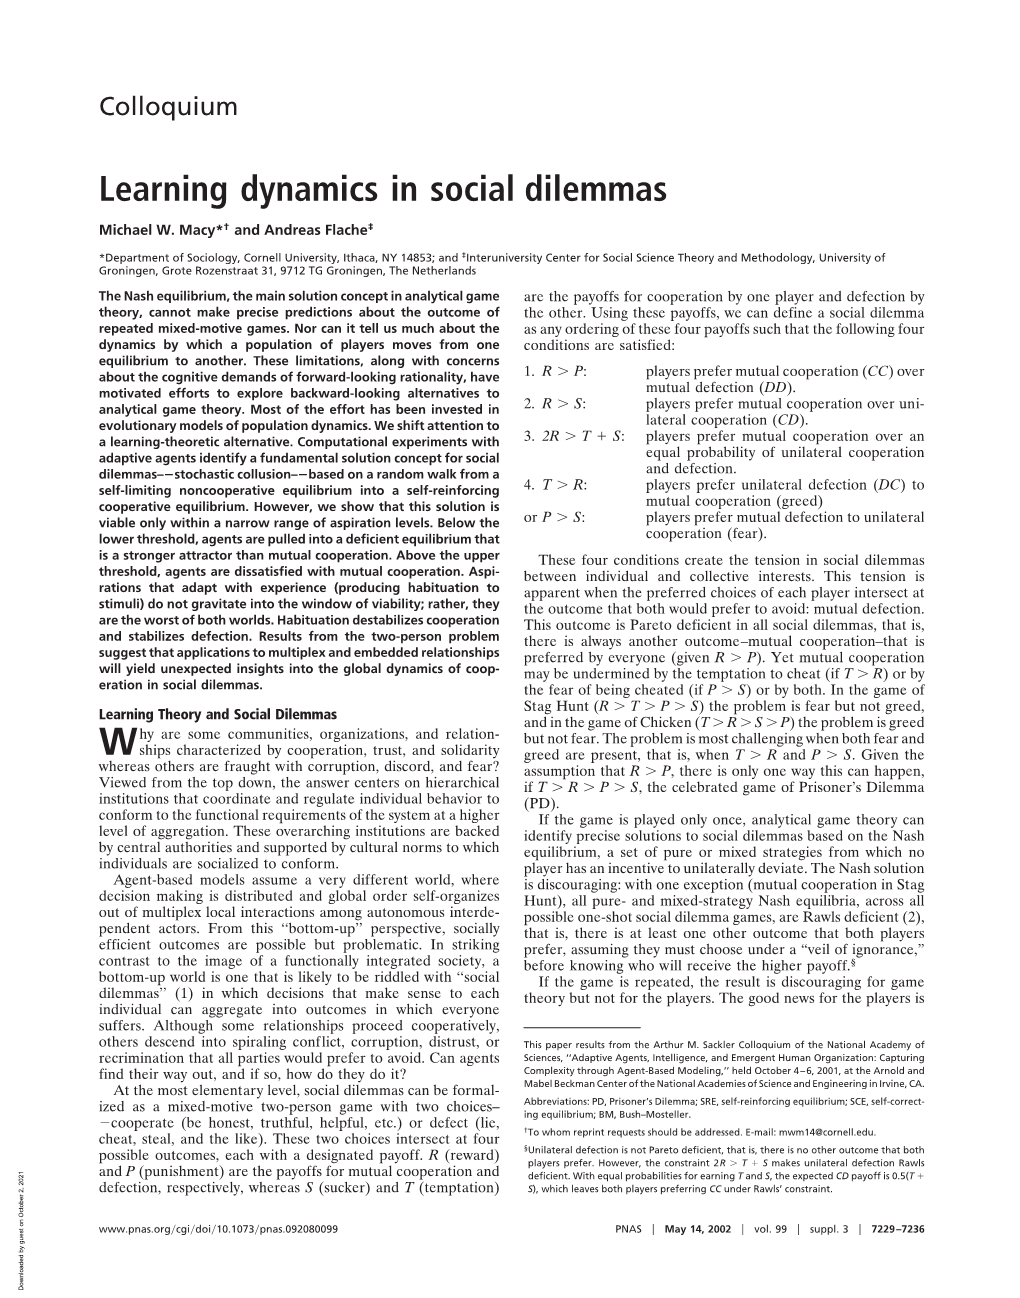 Learning Dynamics in Social Dilemmas